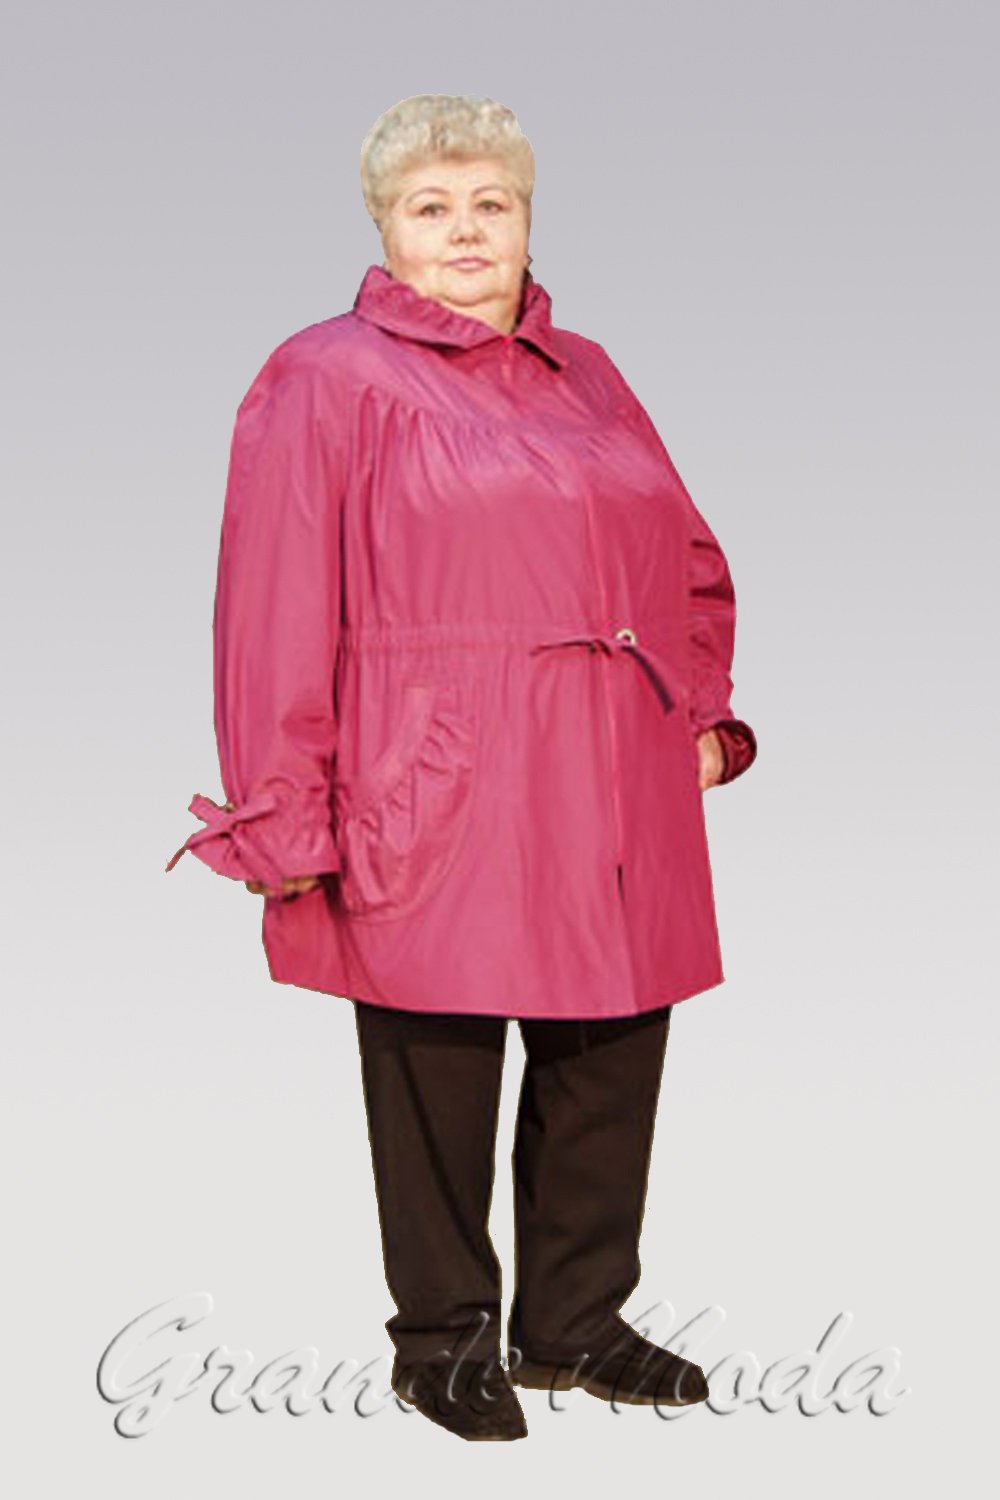 Куртка 70 размера мужские. Валберис куртки размер 68-70 женские демисезонные. Ветровки больших размеров для женщин. Ветровки женские больших размеров. Женская куртка для бабушки.